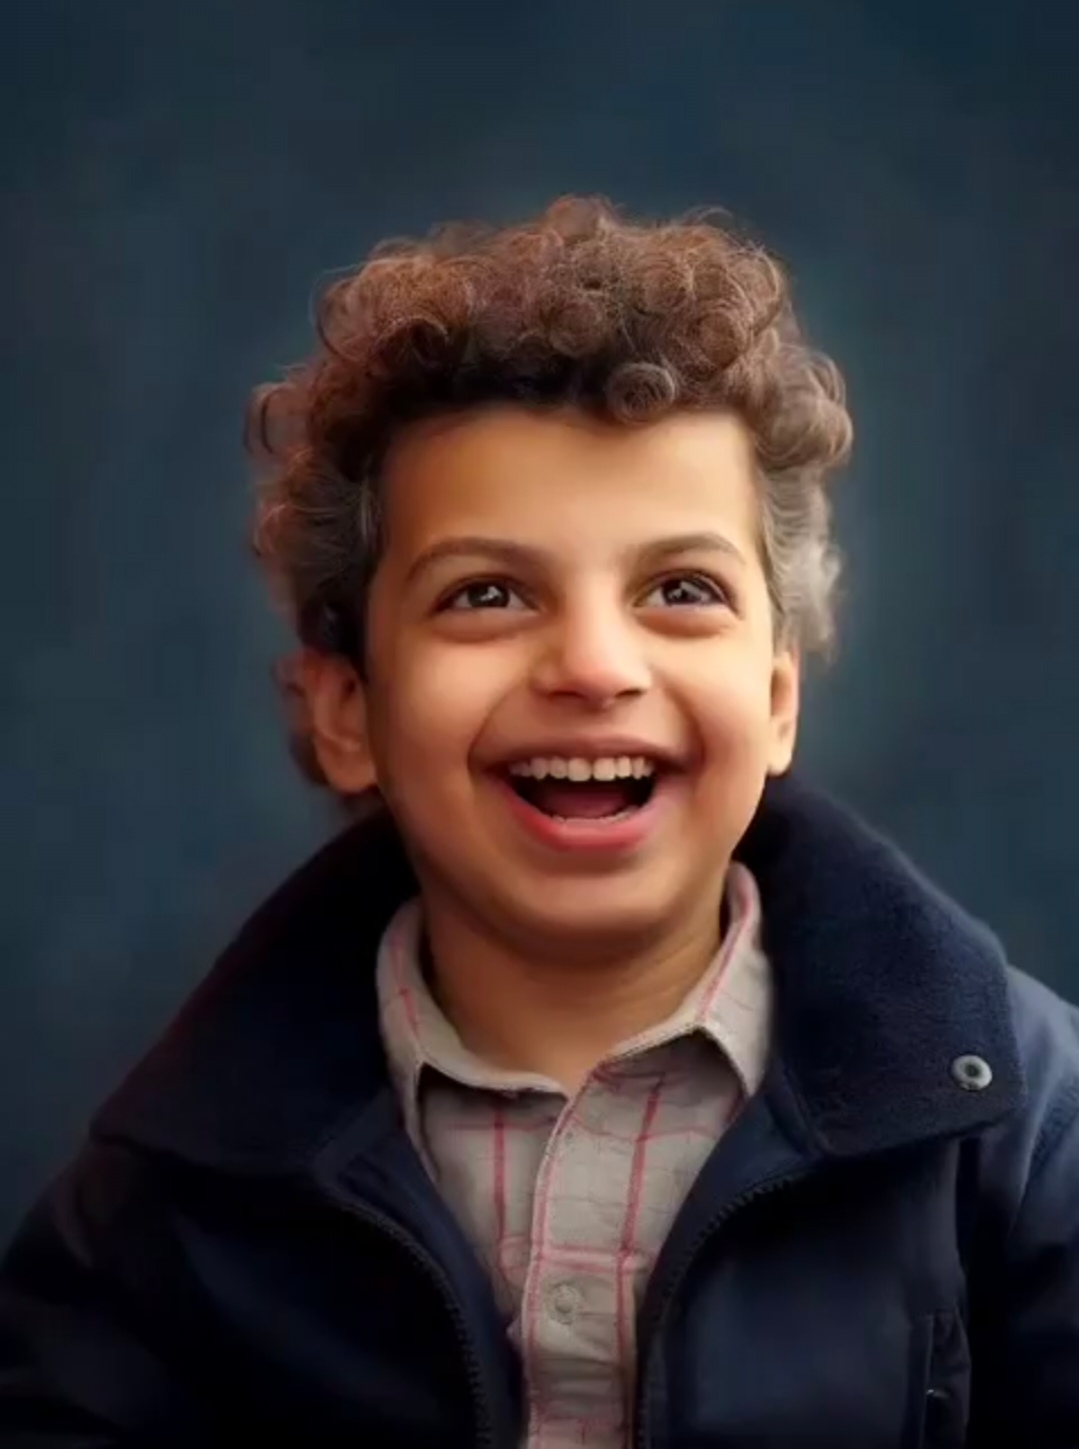 بازسازی تصاویر کودکی چهره های معروف با کمک هوش مصنوعی